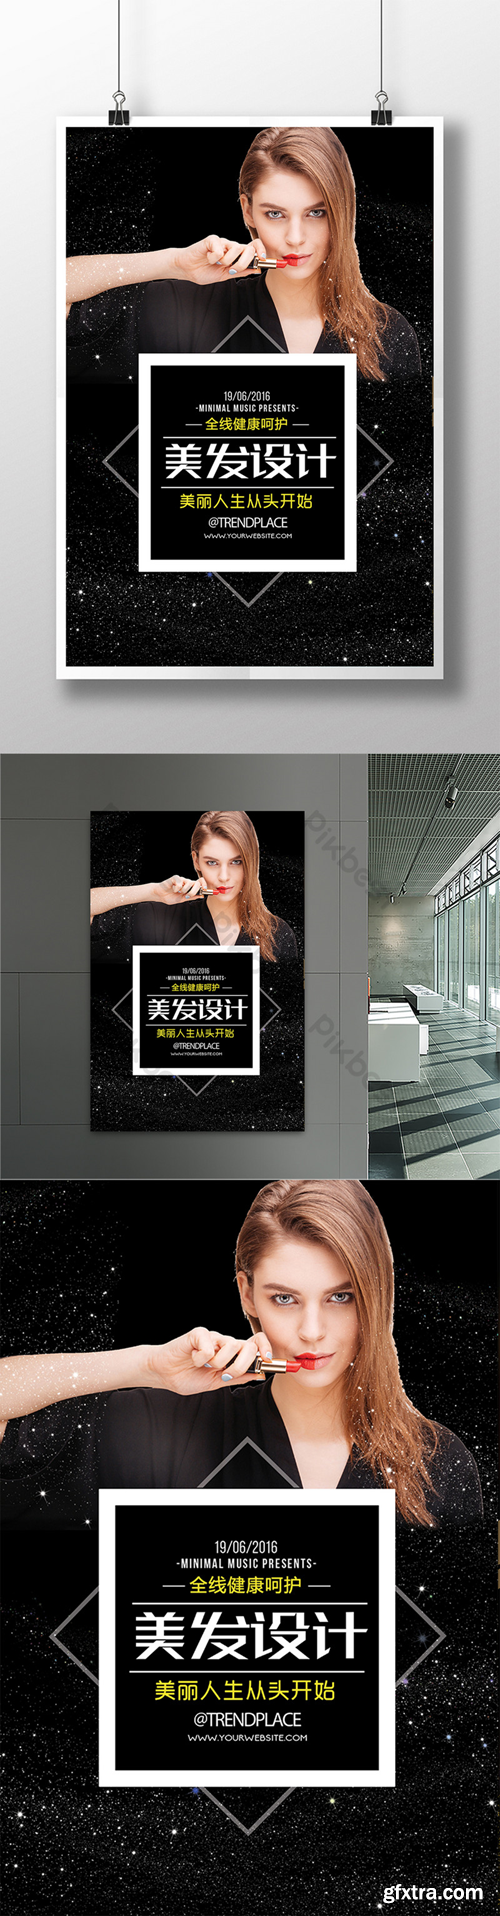 Beauty salon design poster Template PSD